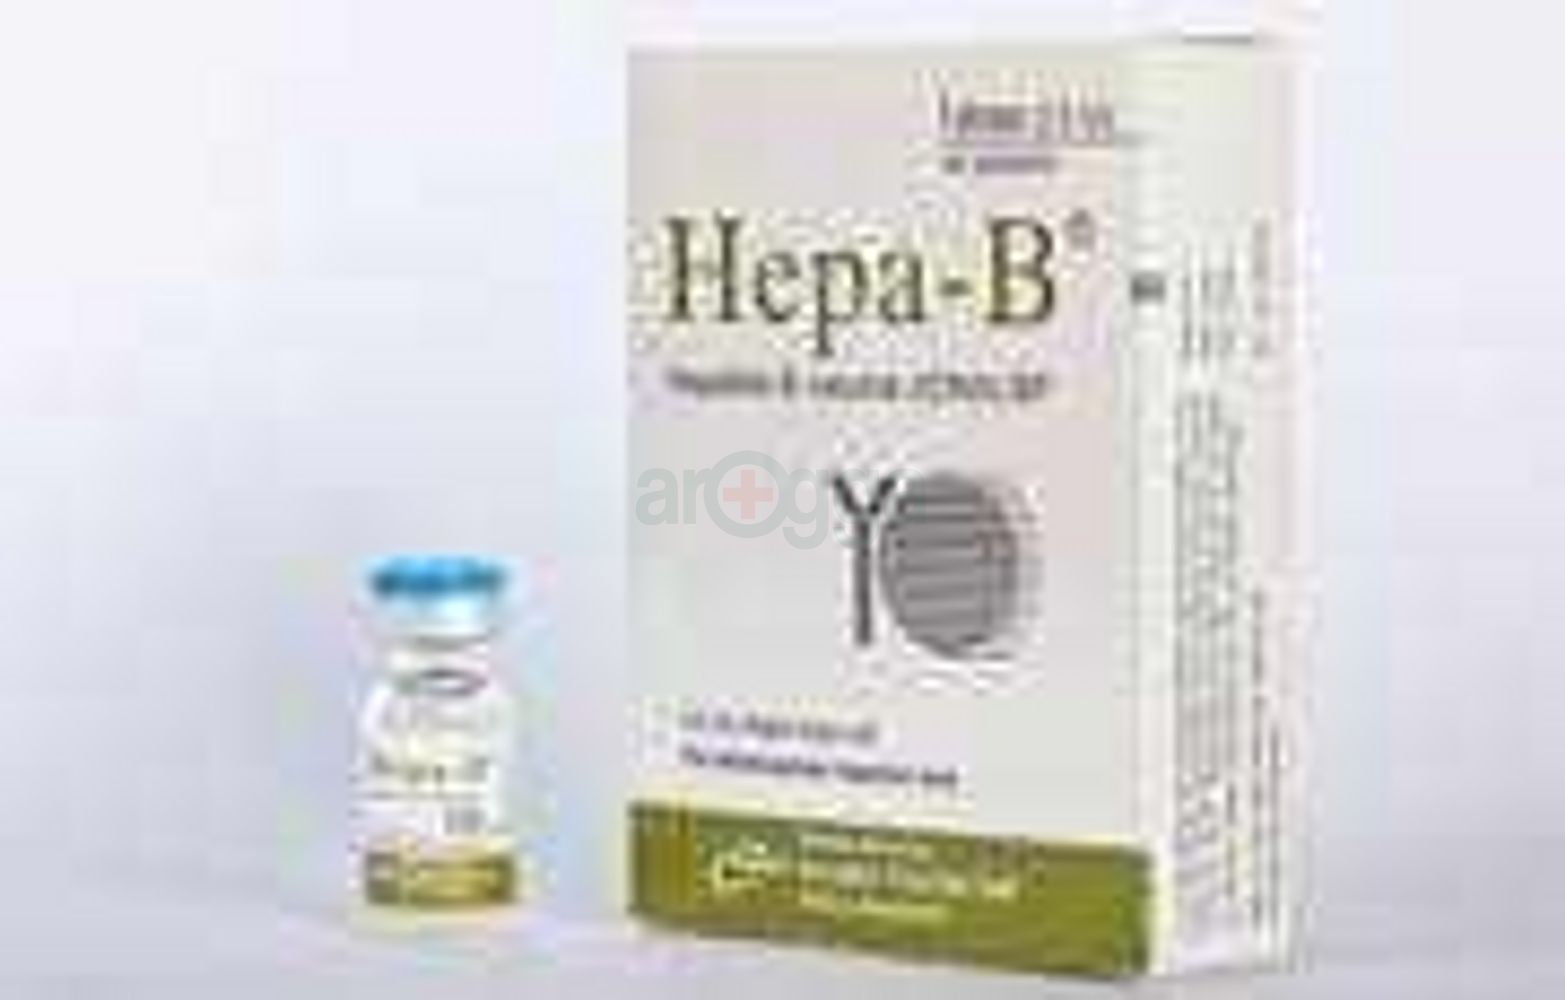 Hepa-B for Pediatric